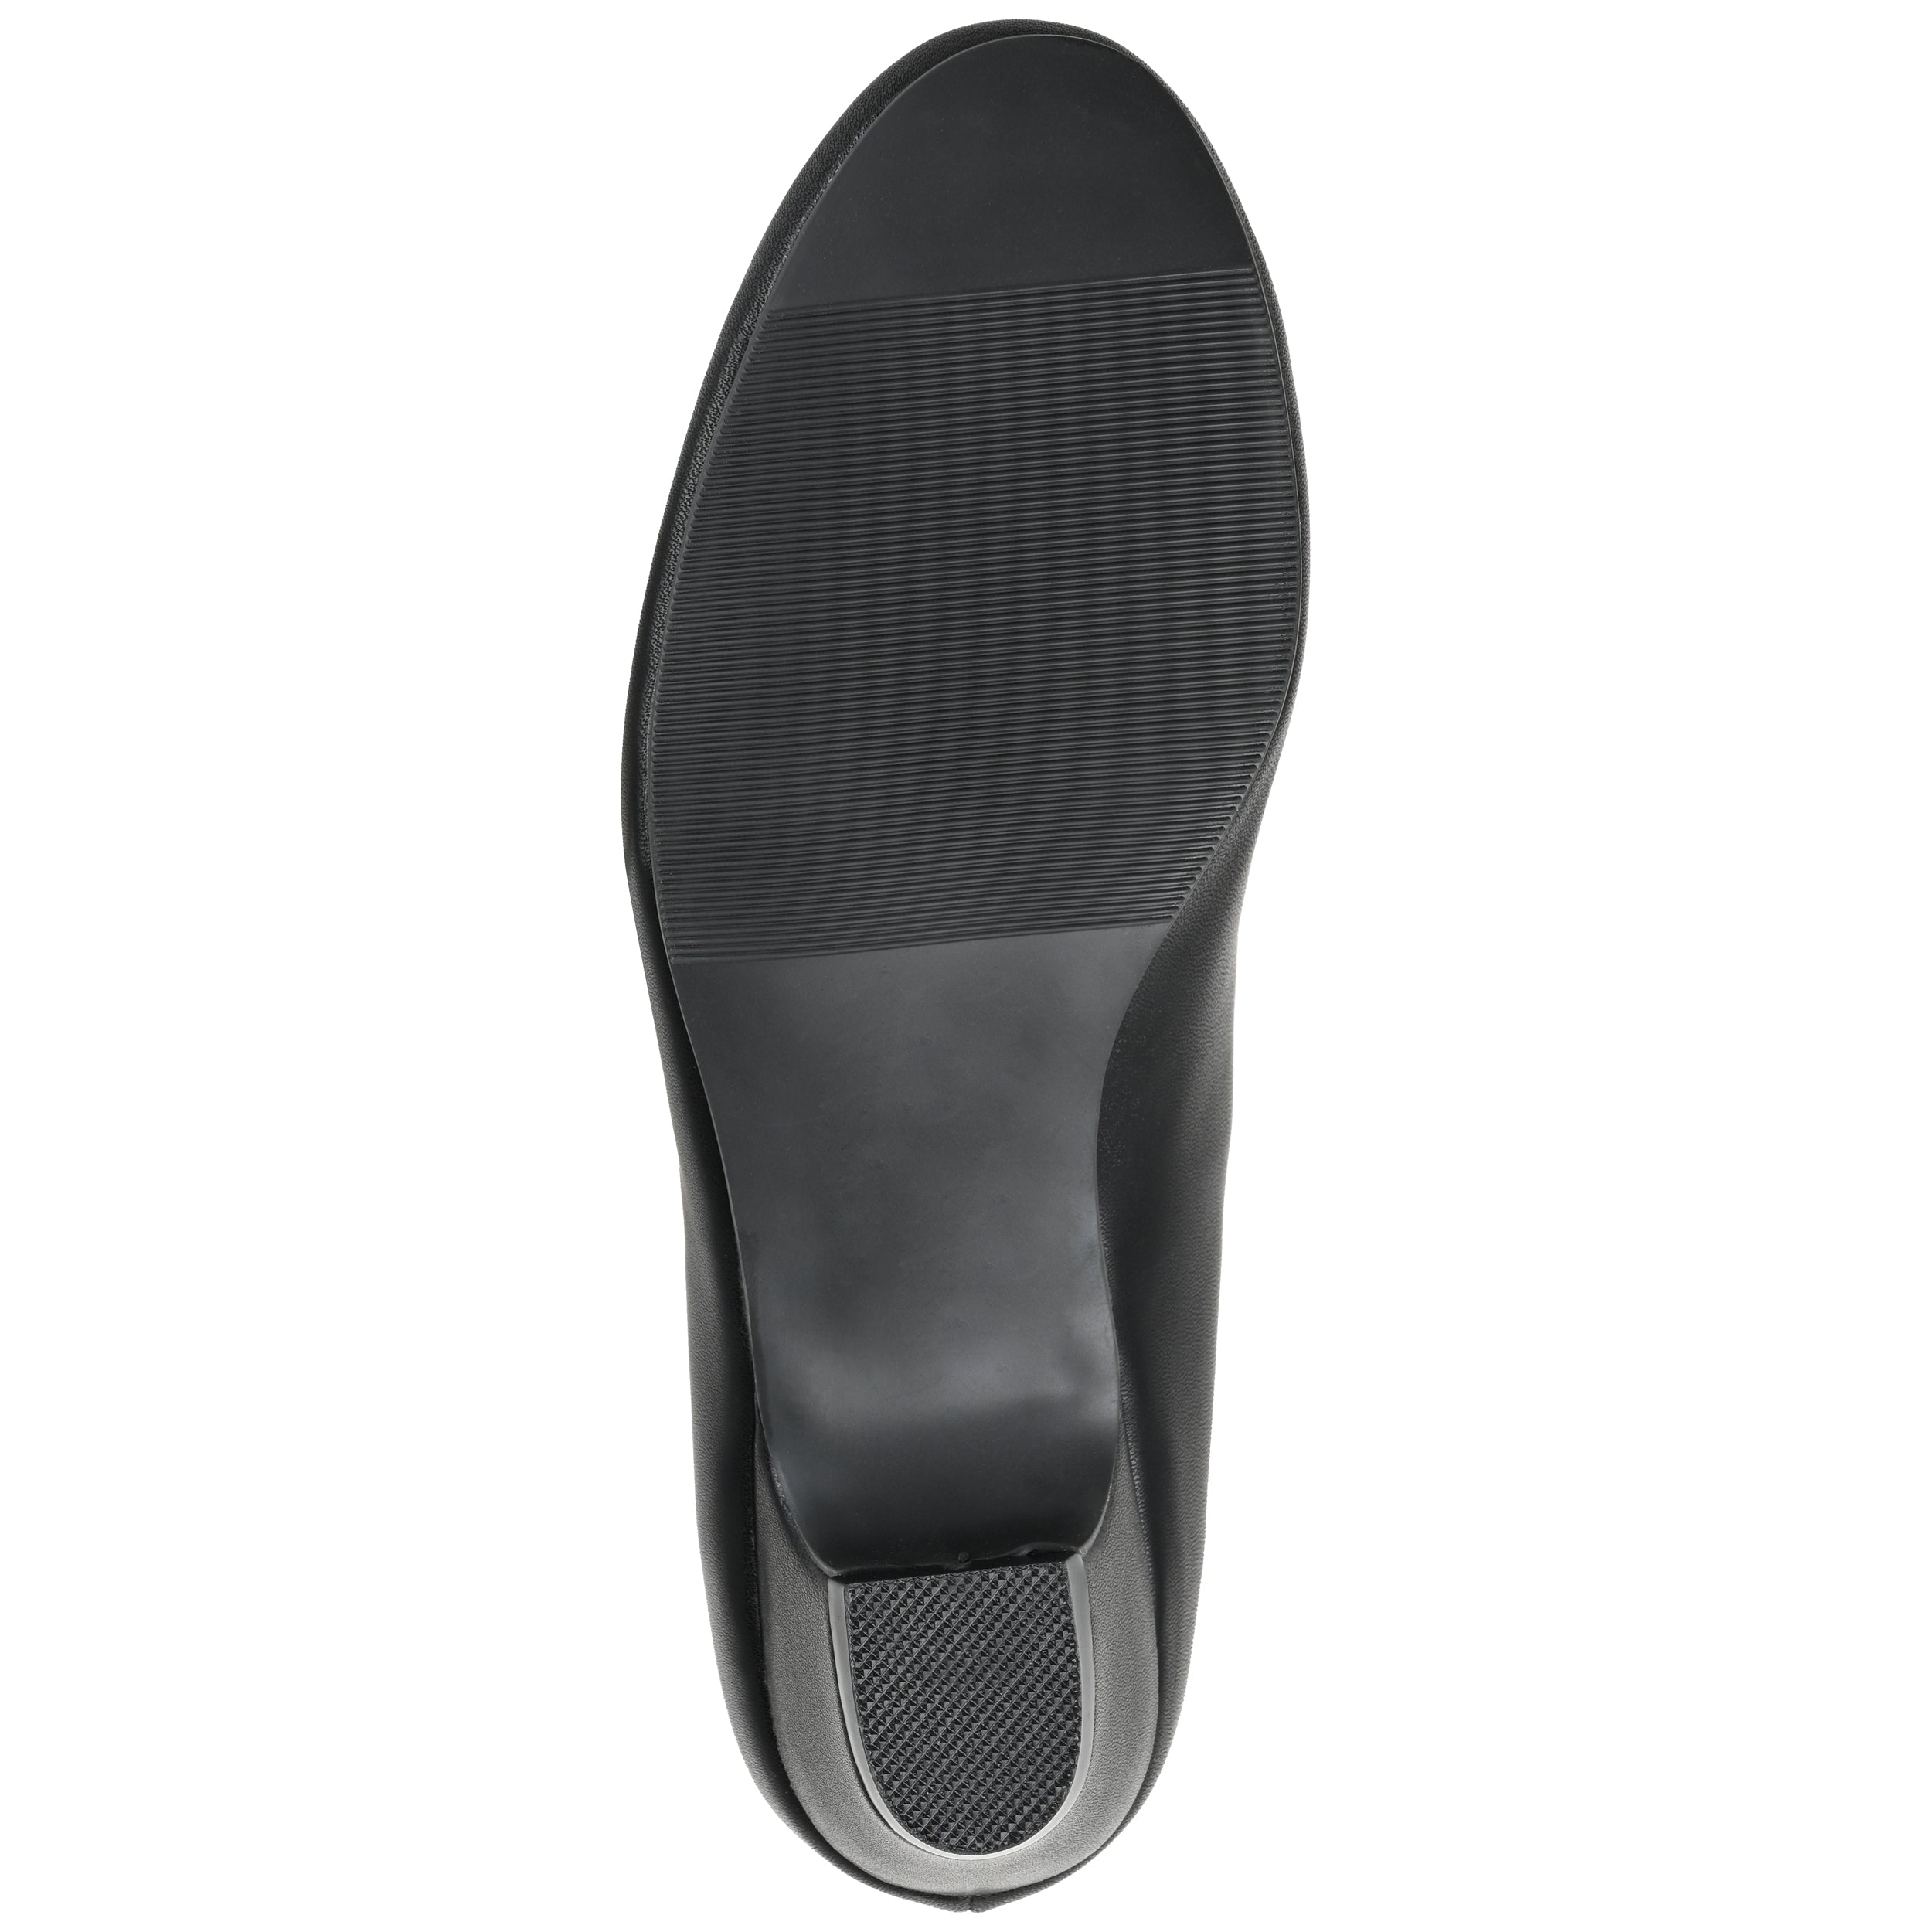 Saar Pump | Women's Comfort Heels | Journee Collection